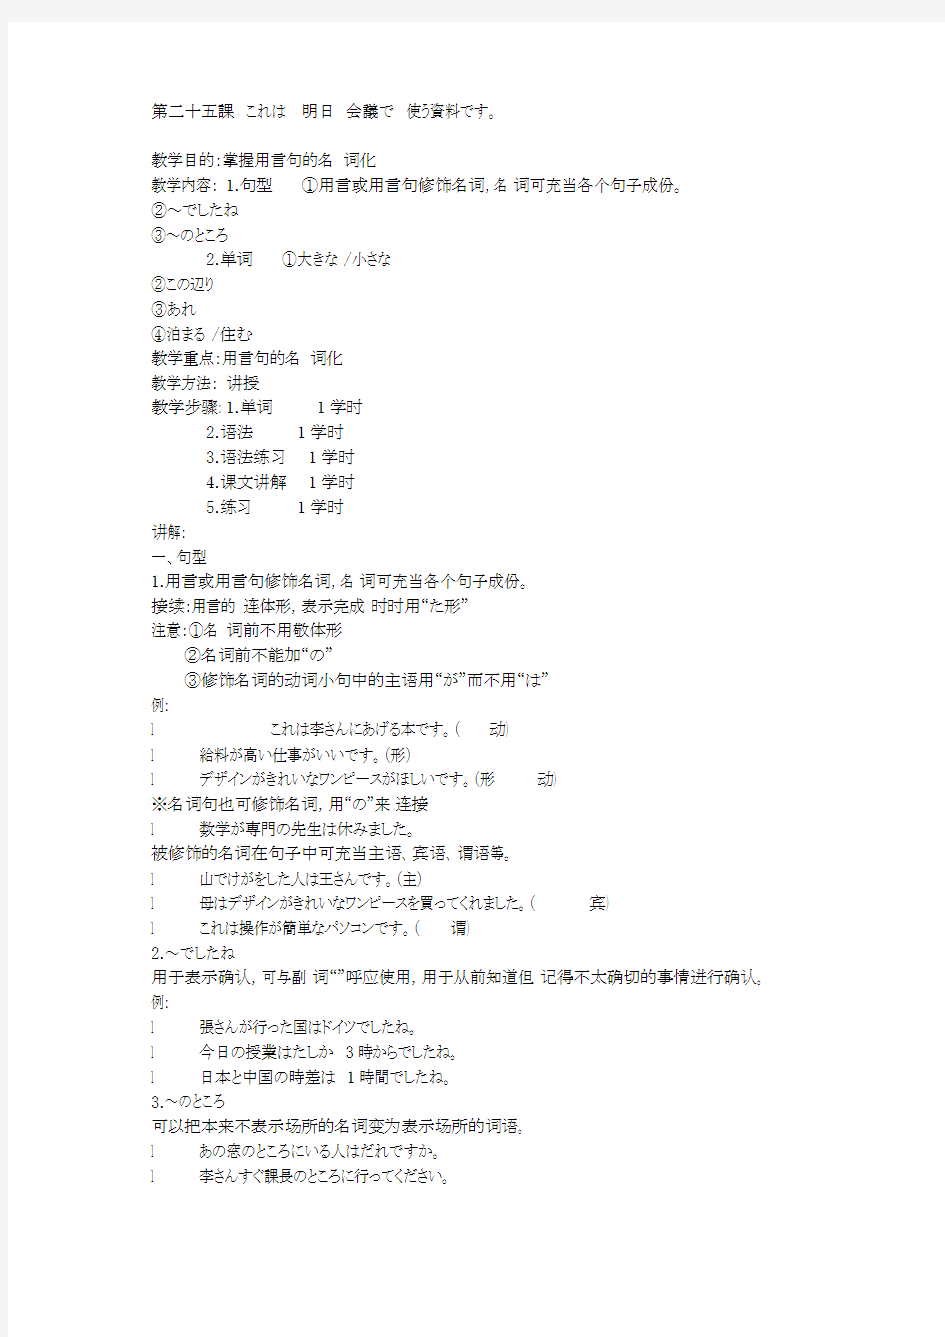 新版标准日本语(初级)下册语法-超全面-